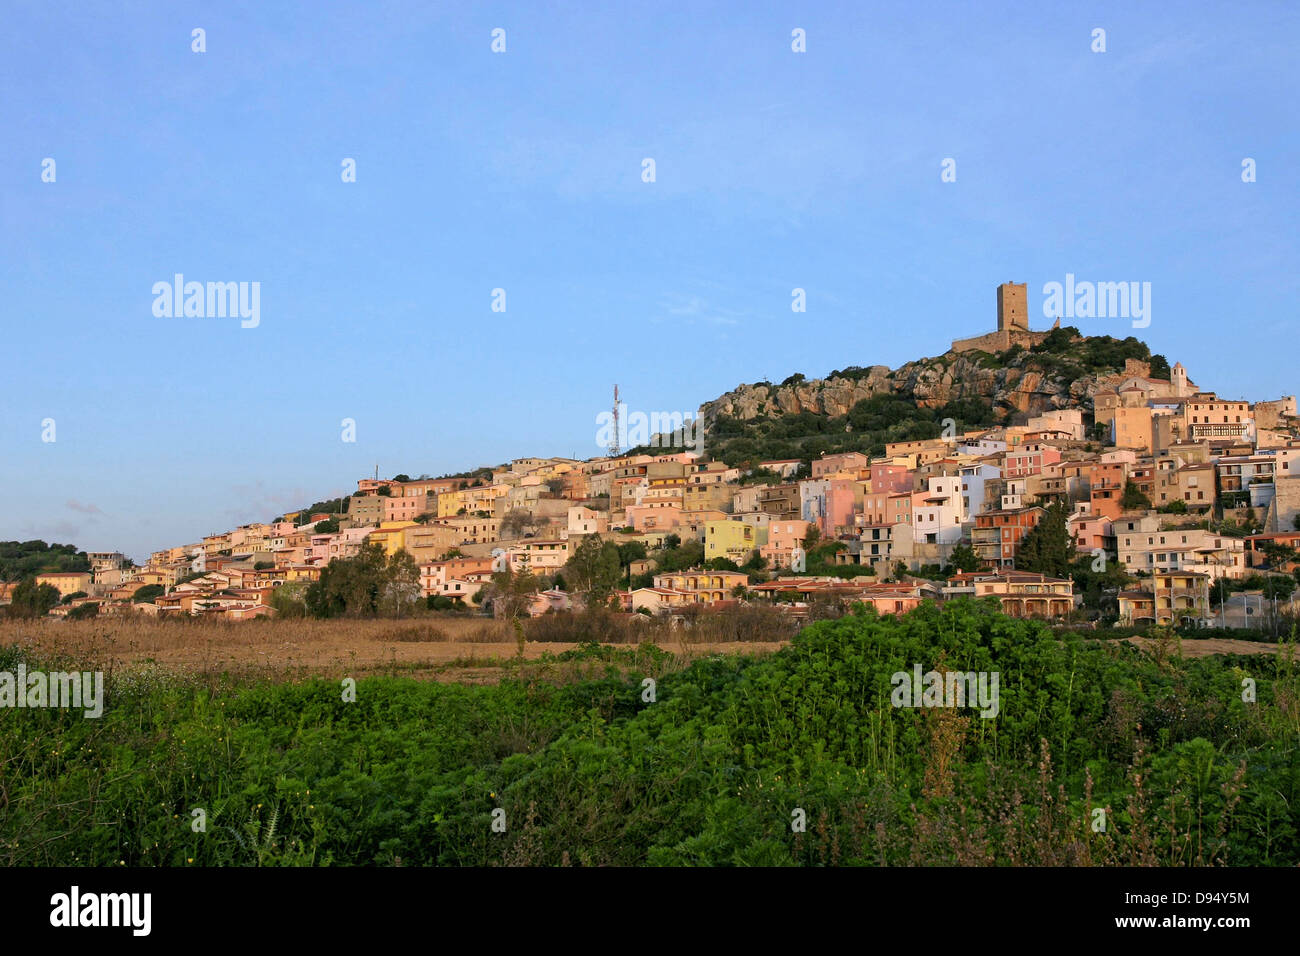 Posada  Village Sardegna   Italy by andrea quercioli Stock Photo